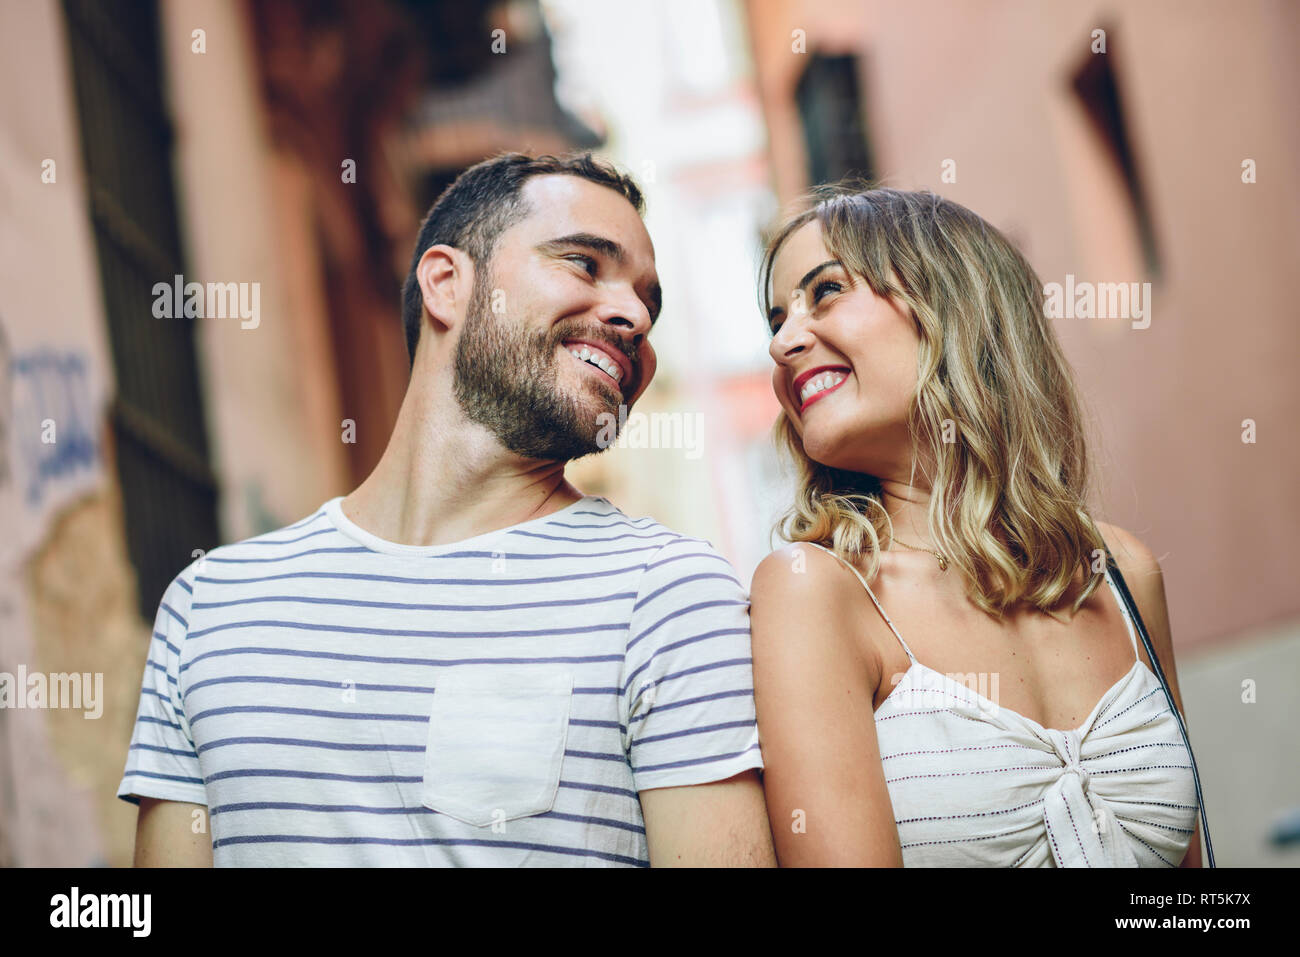 Spanien, Andalusien, Malaga, gerne mit touristischen Paar an jedem anderen in der Stadt suchen Stockfoto